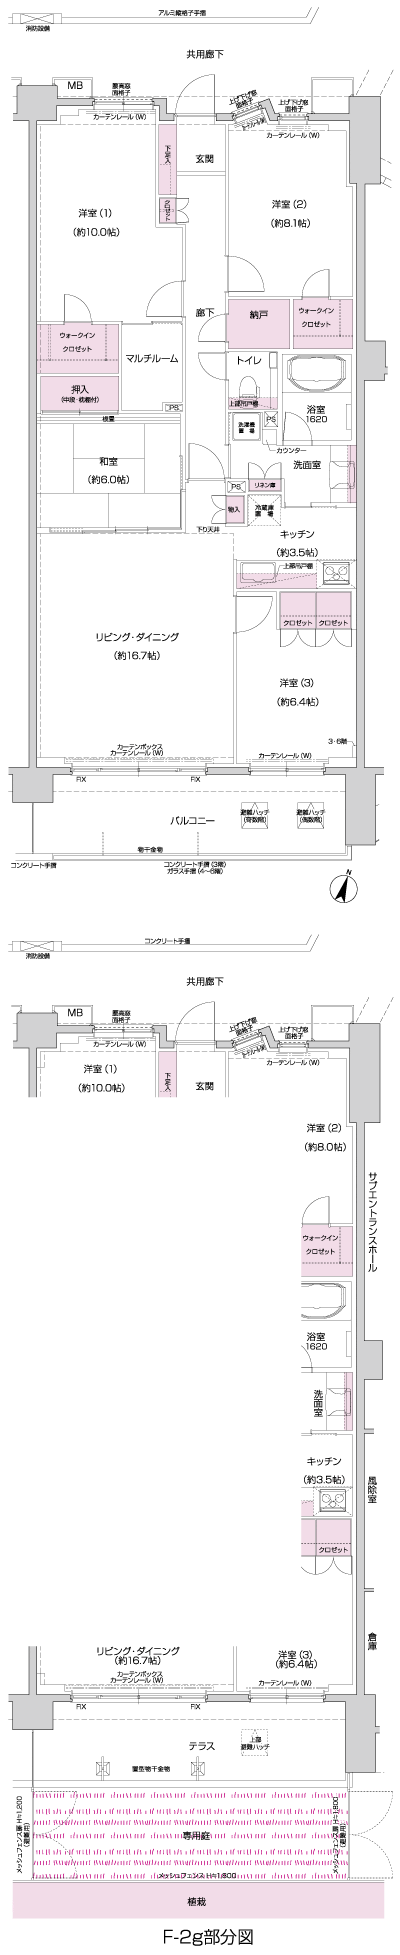 Floor: 4LDK + MR + N + 2WIC, occupied area: 117.68 sq m